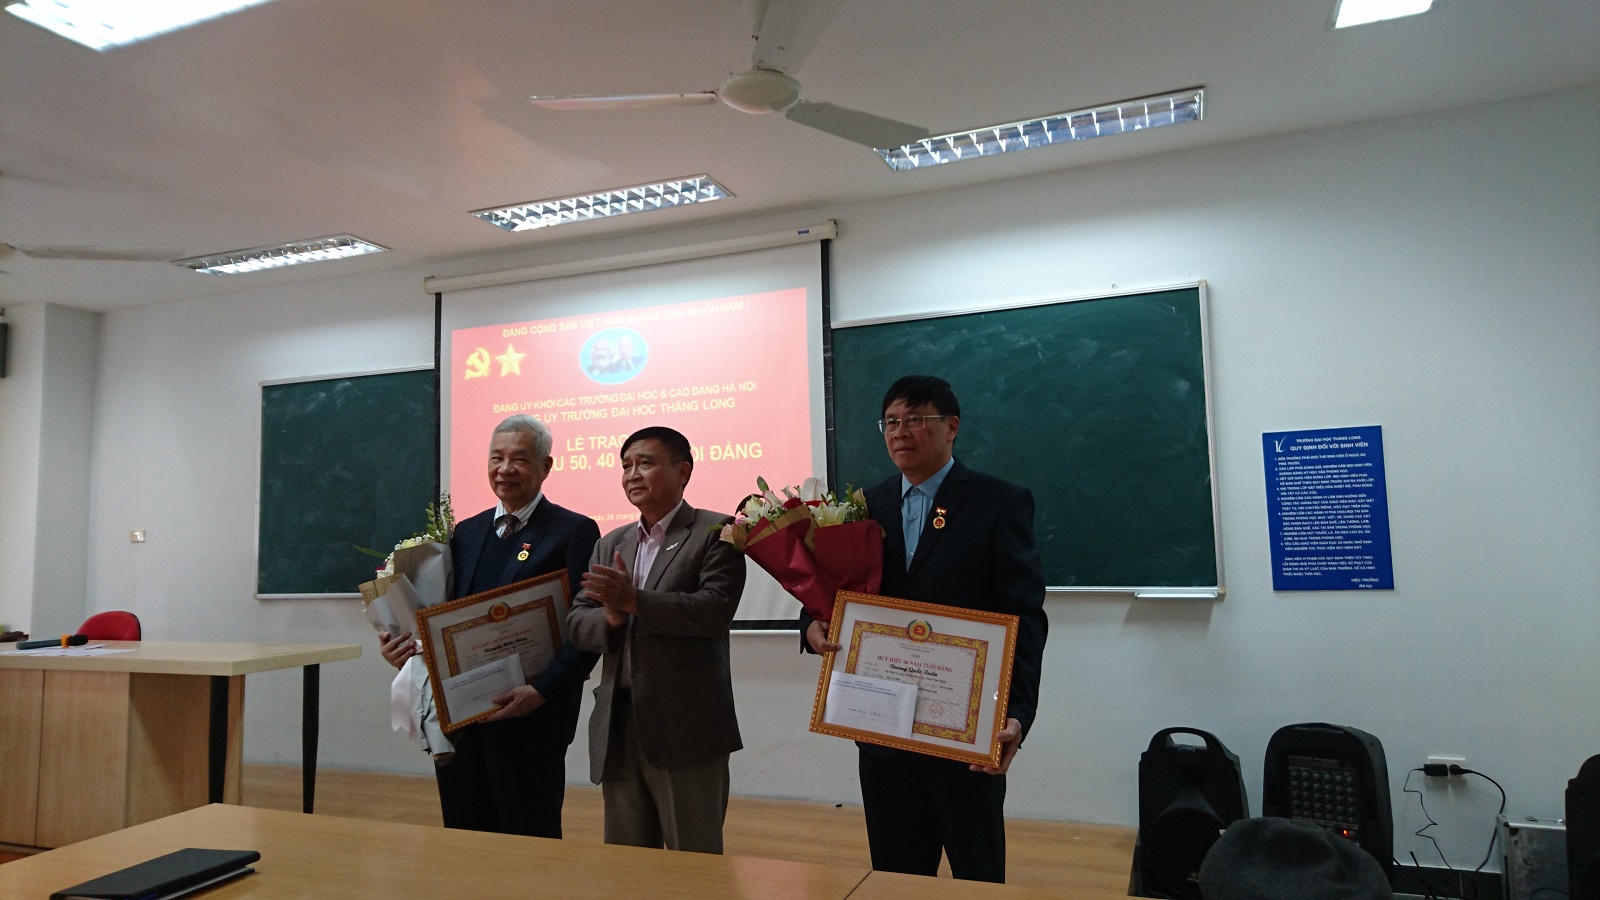 Đảng bộ trường Đại học Thăng Long tổ chức Lễ trao Huy hiệu 50, 40 năm tuổi Đảng